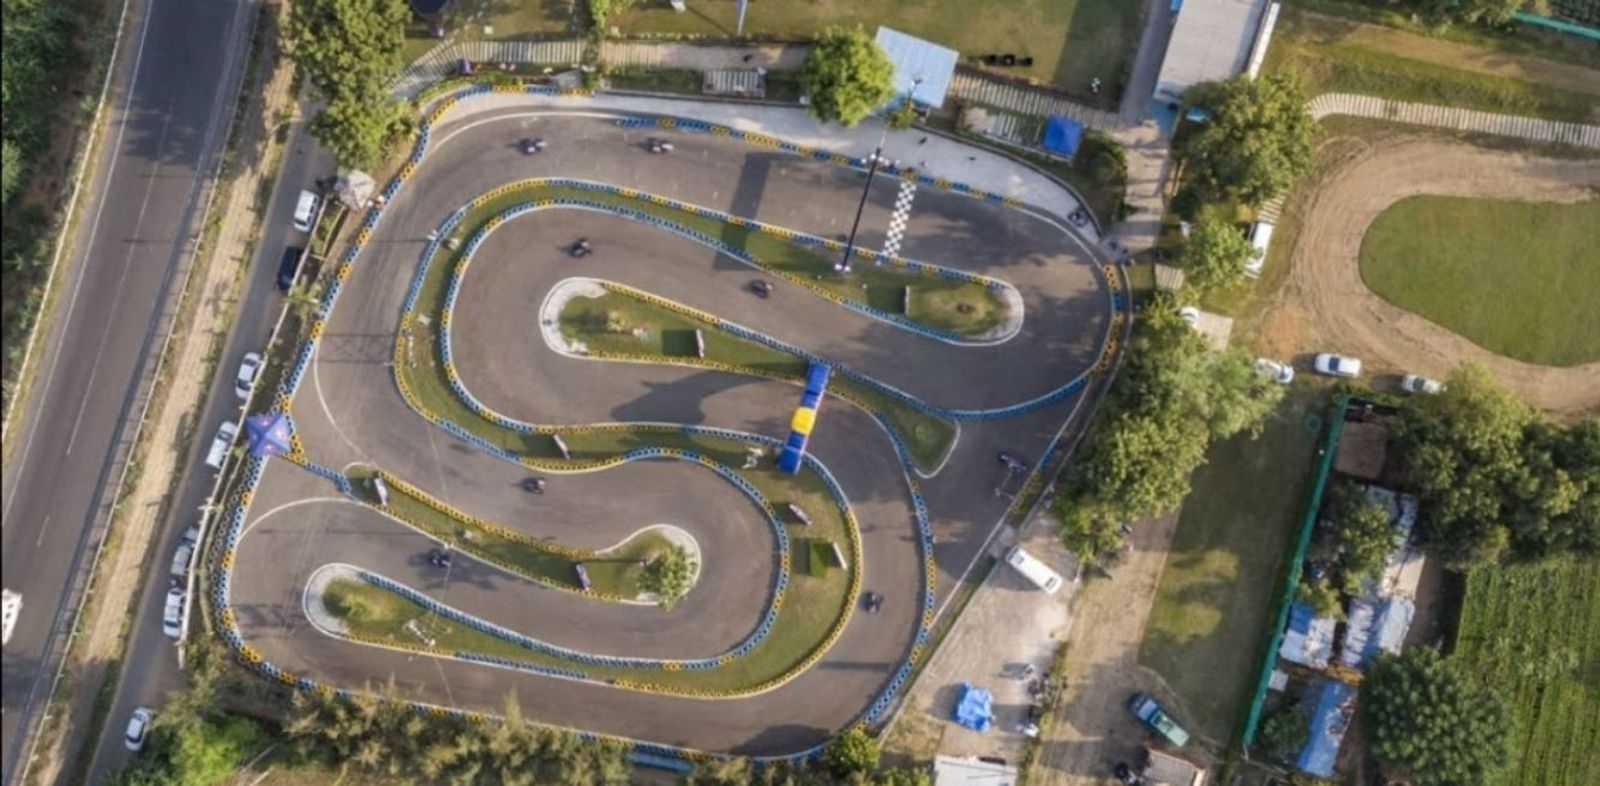 go karting tracks in India | KreedOn